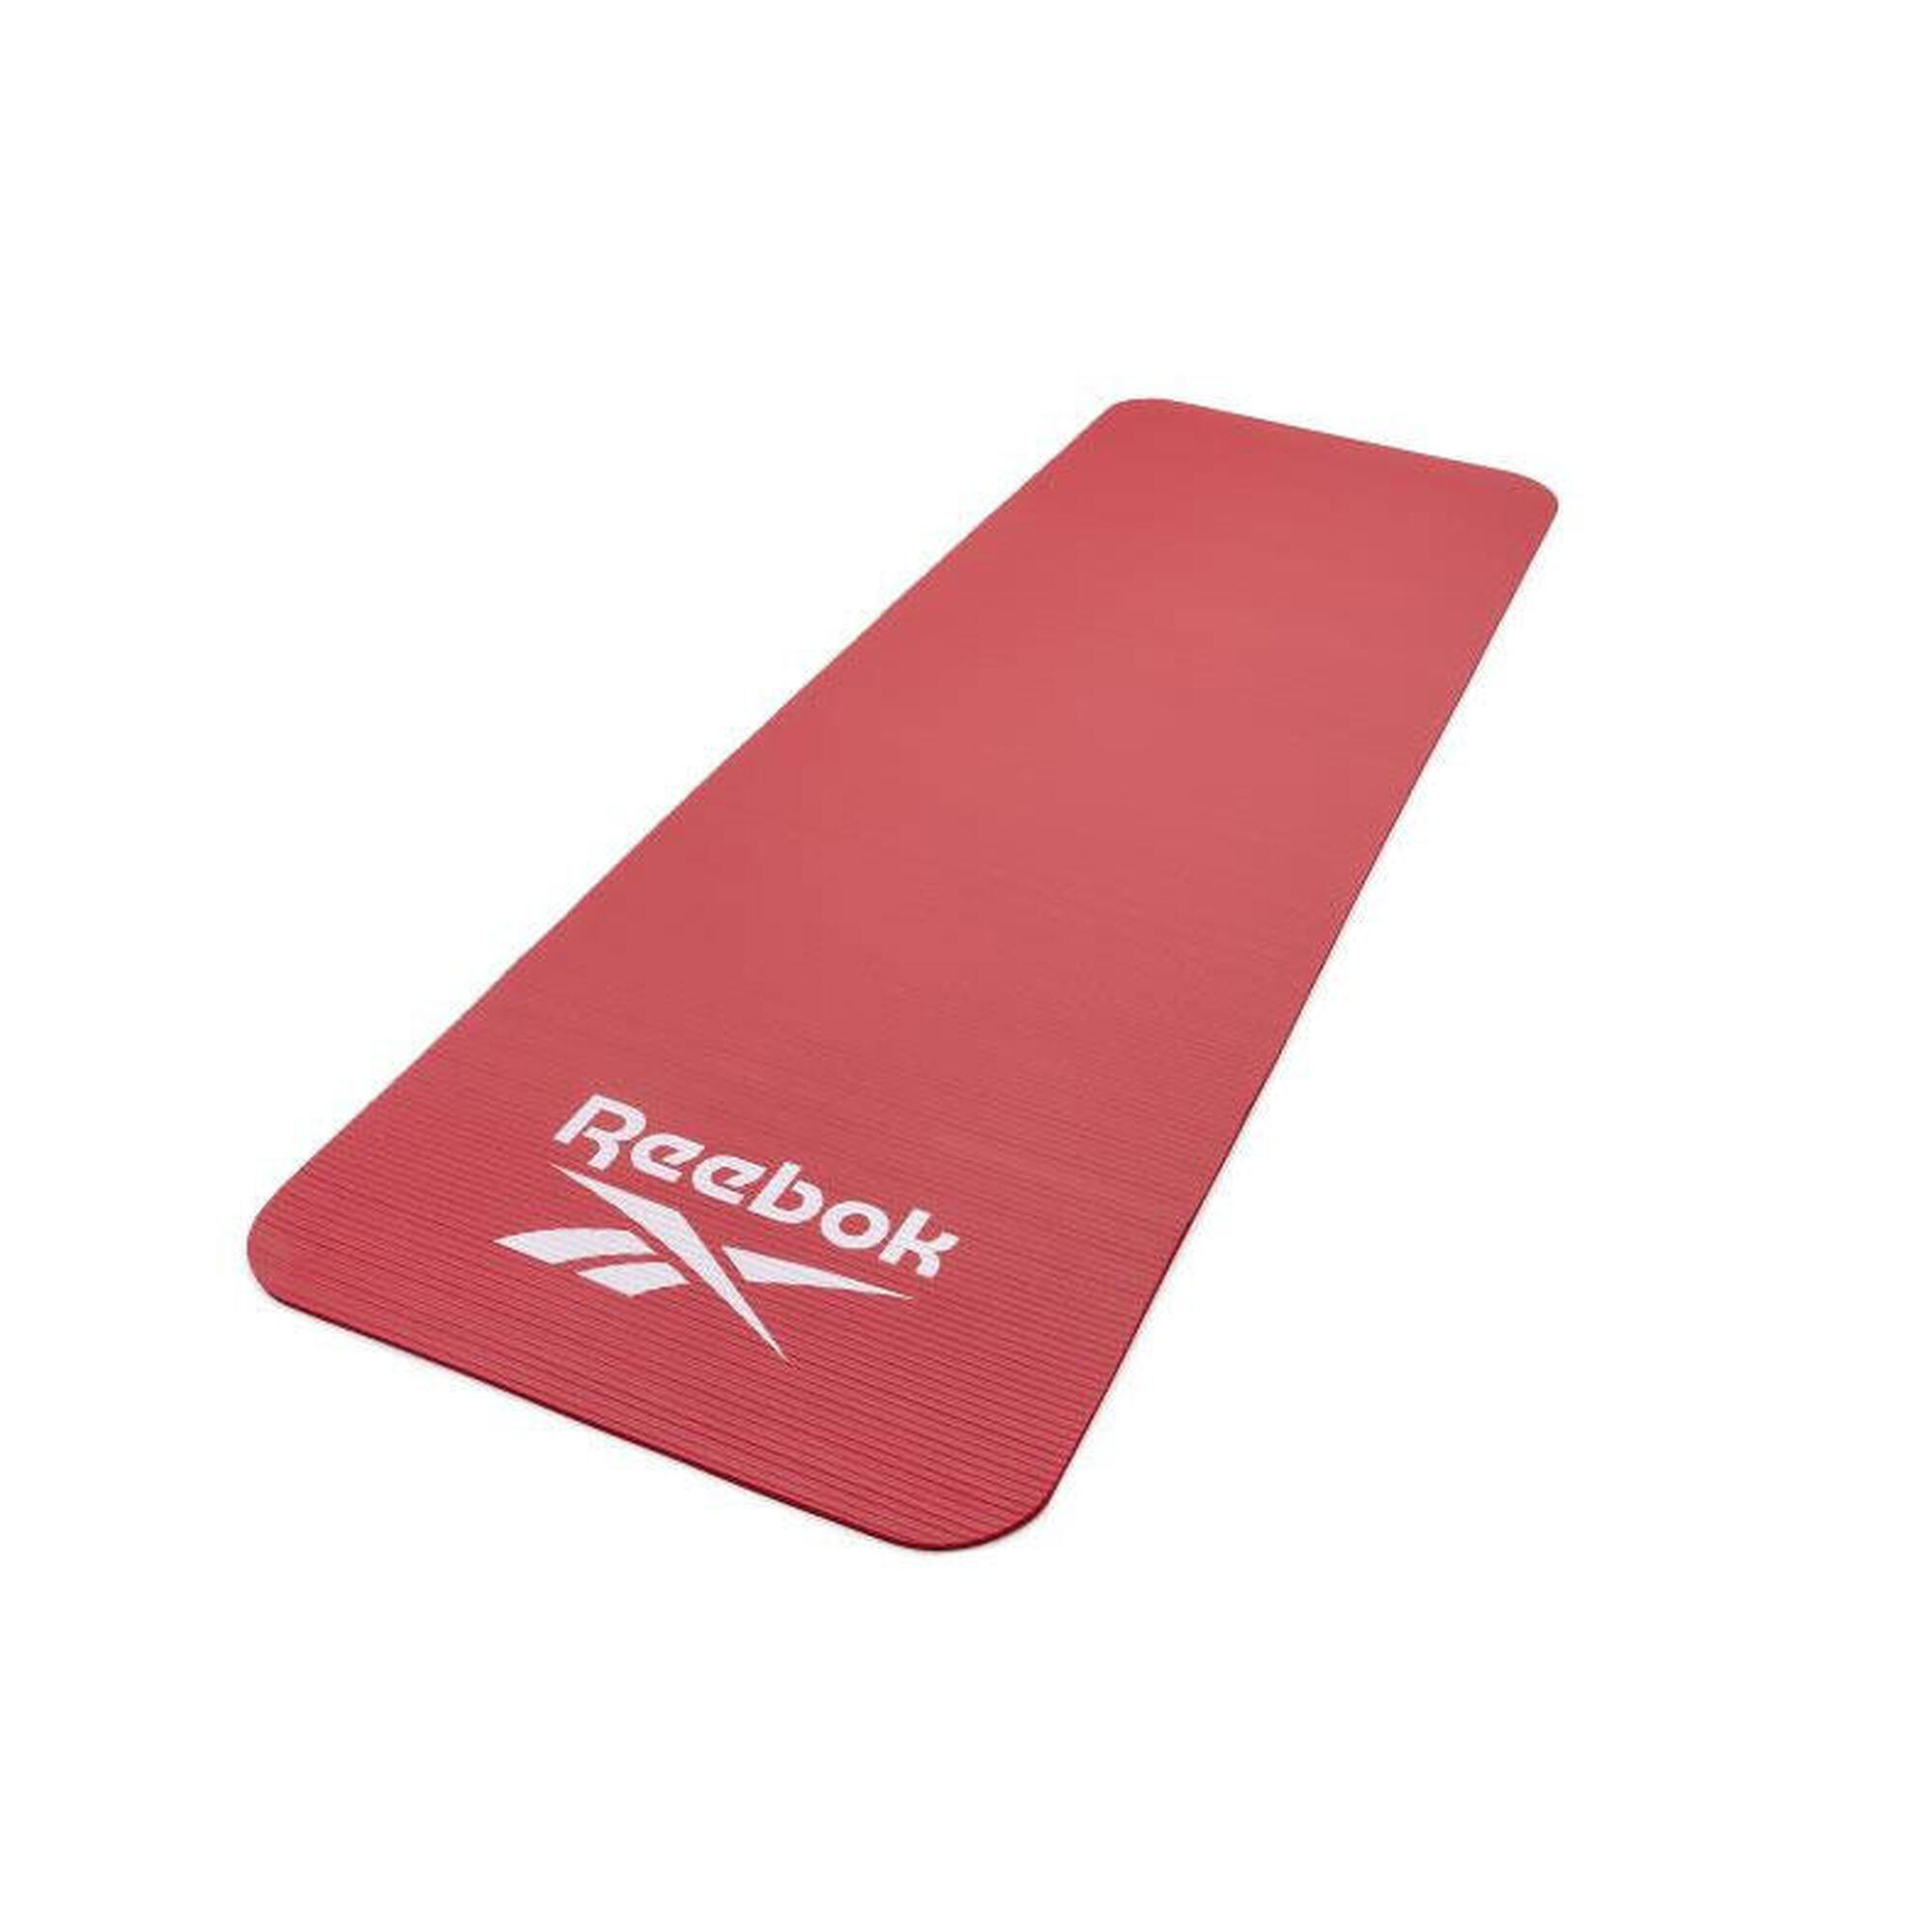 Reebok Trainingsmatte - 7mm Farbe: Rot